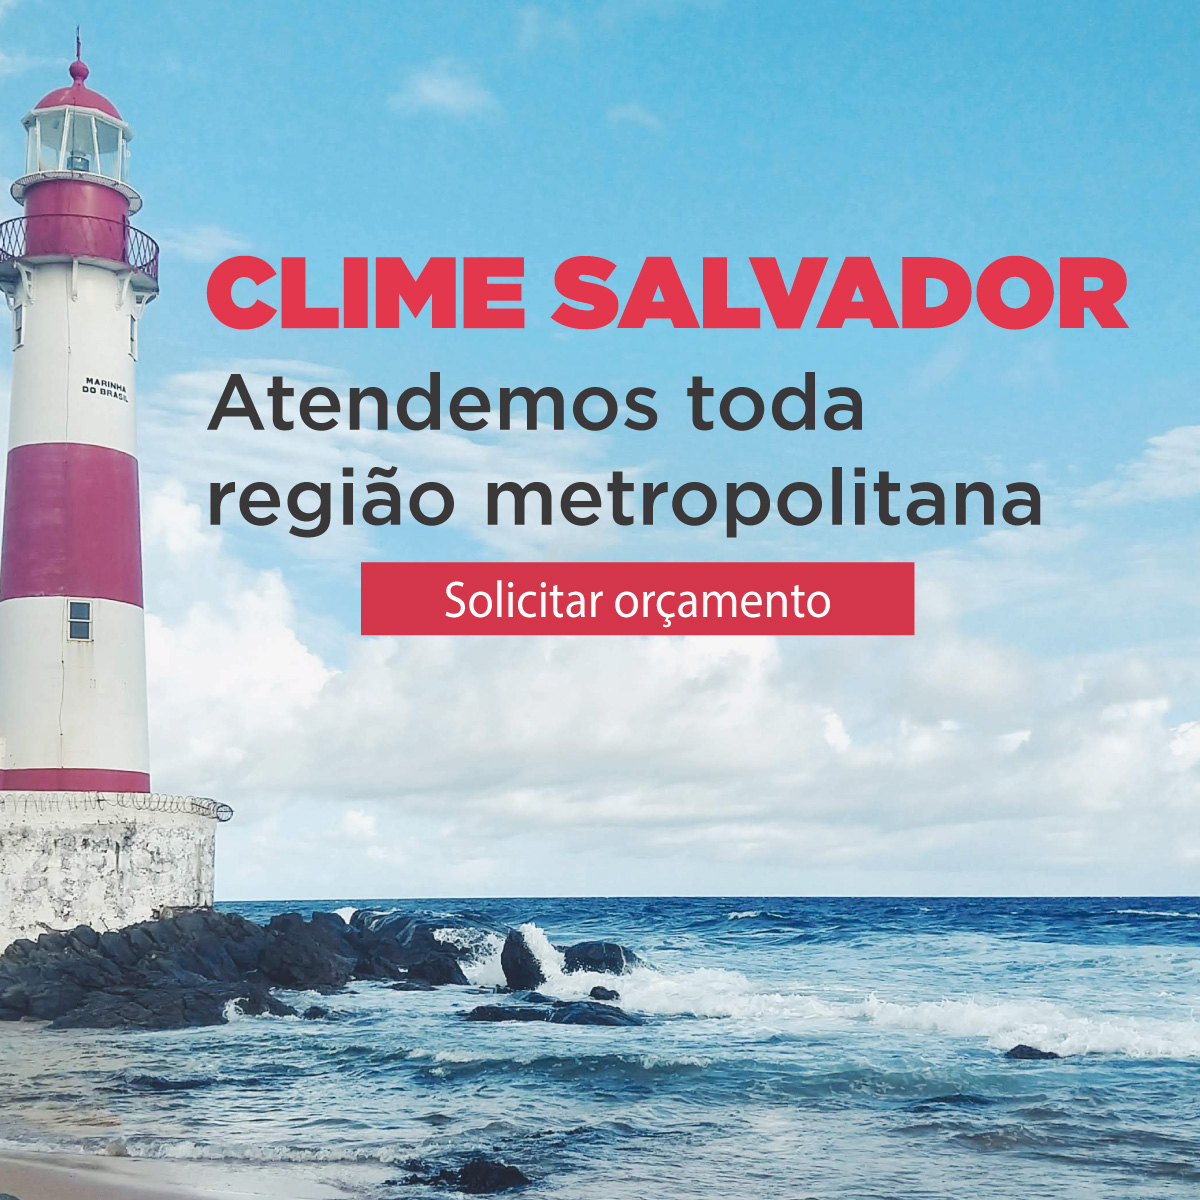 Clime Salvador